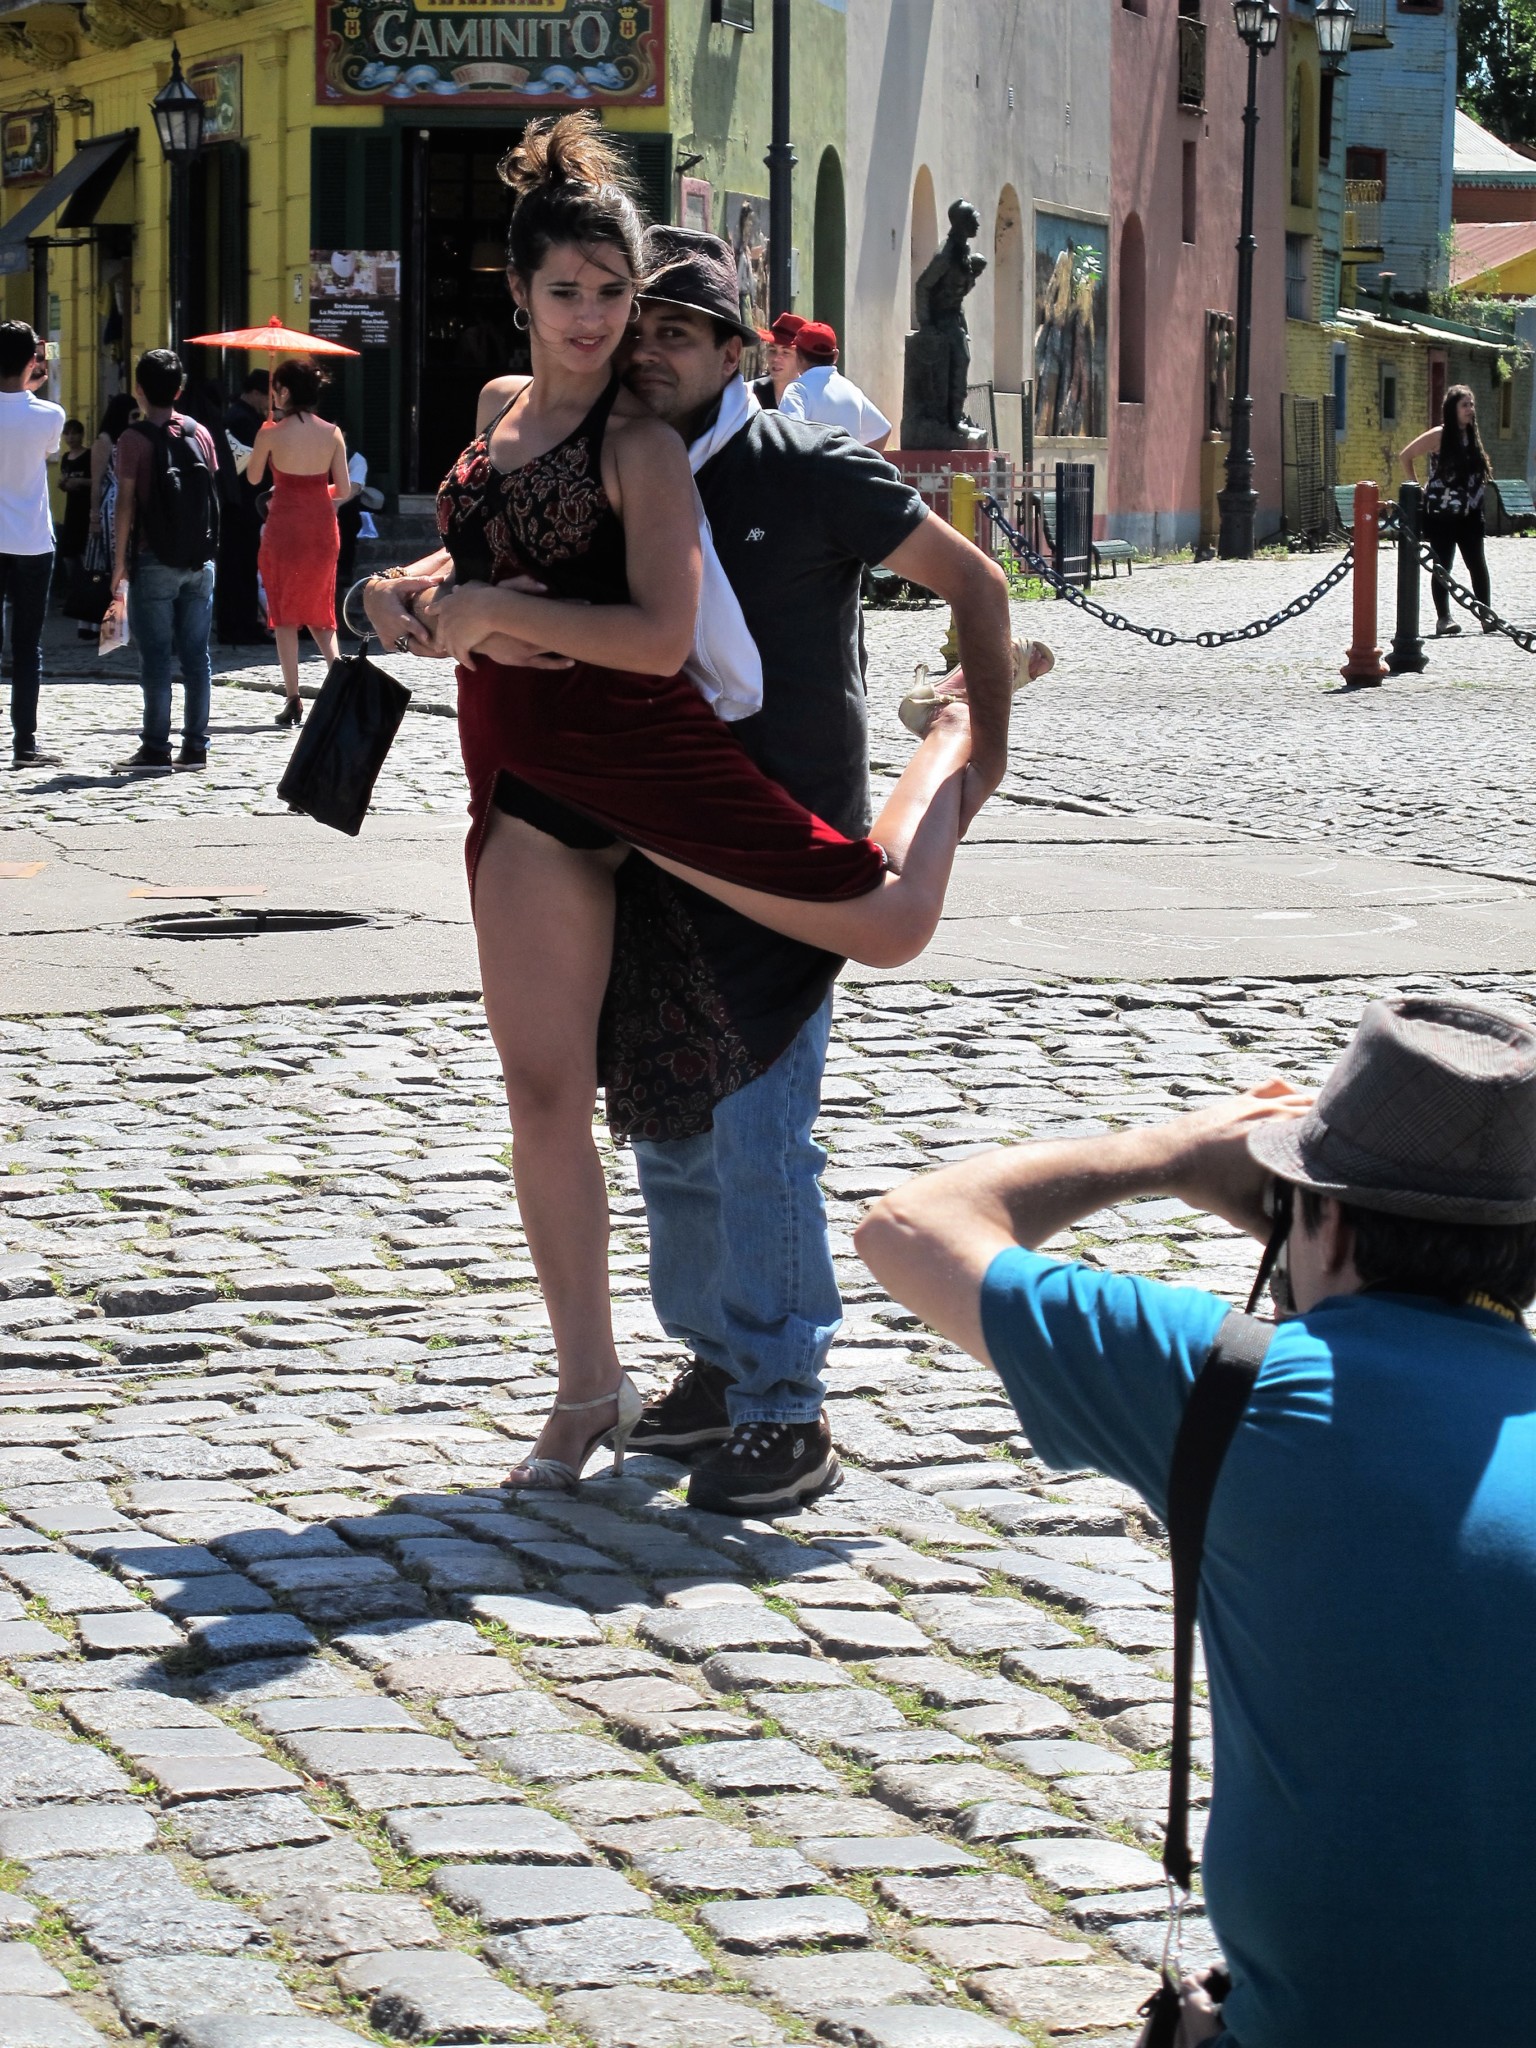 Tangotänzerin in Pose mit Tourist